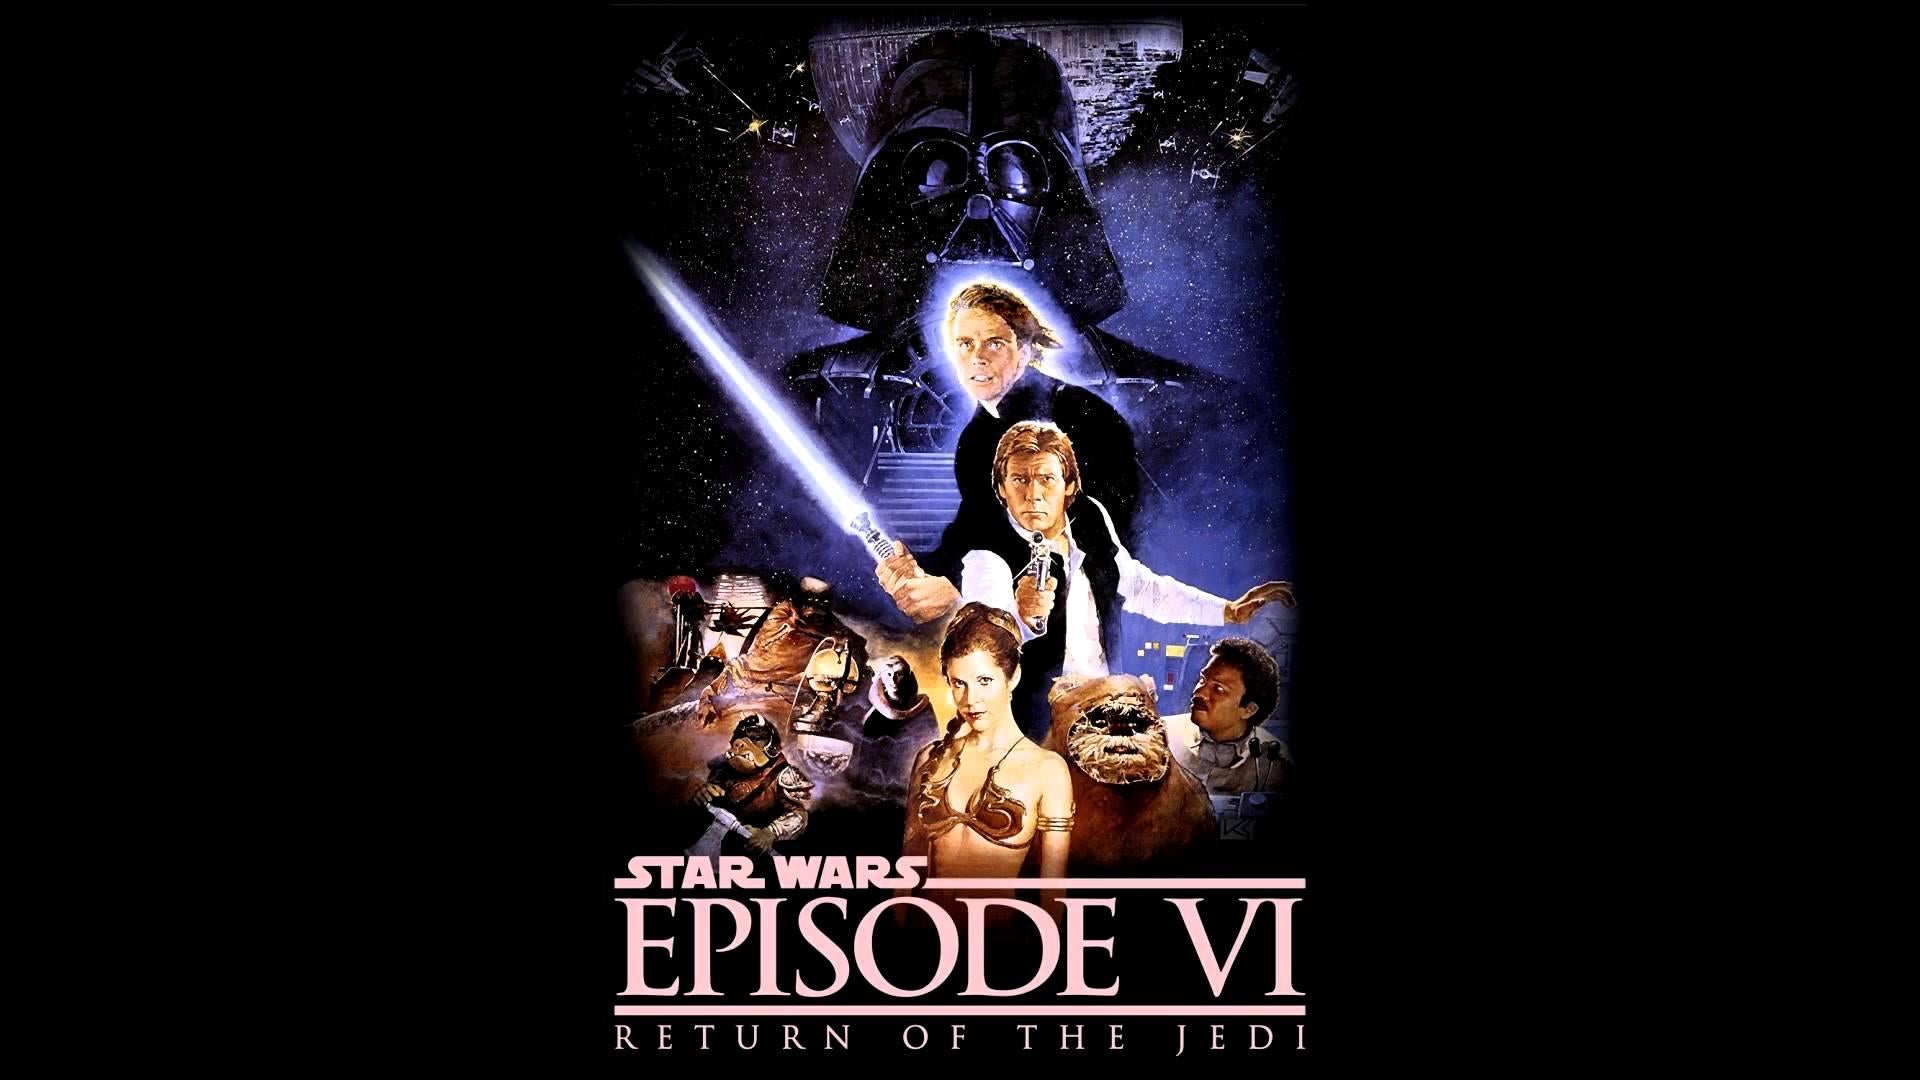 Star Wars: Original Trilogy - Episodes IV-VI